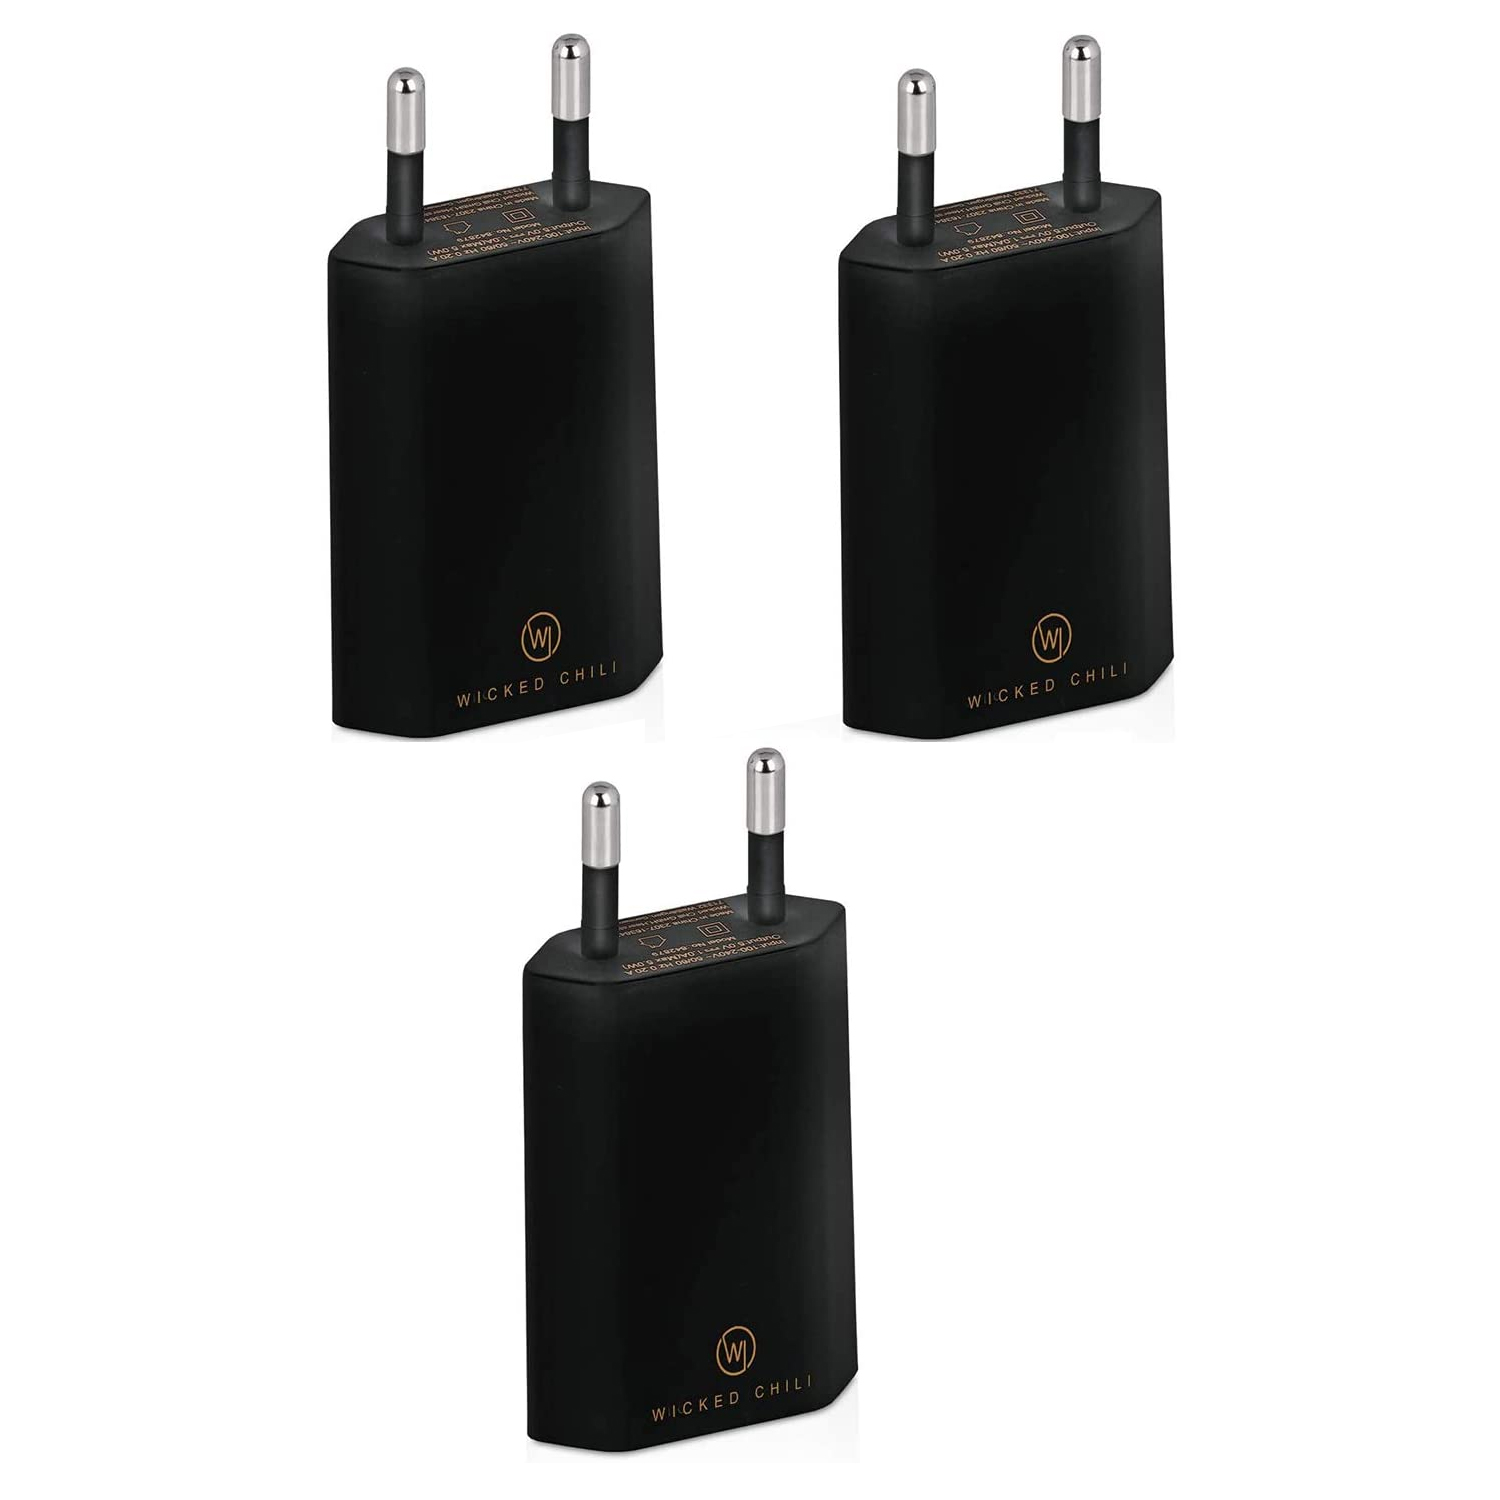 5V) 1A, Ladegerät Handy USB iPhone, CHILI USB Netzteil und Stecker 3x Adapter schwarz für WICKED Galaxy, Smartphone Samsung